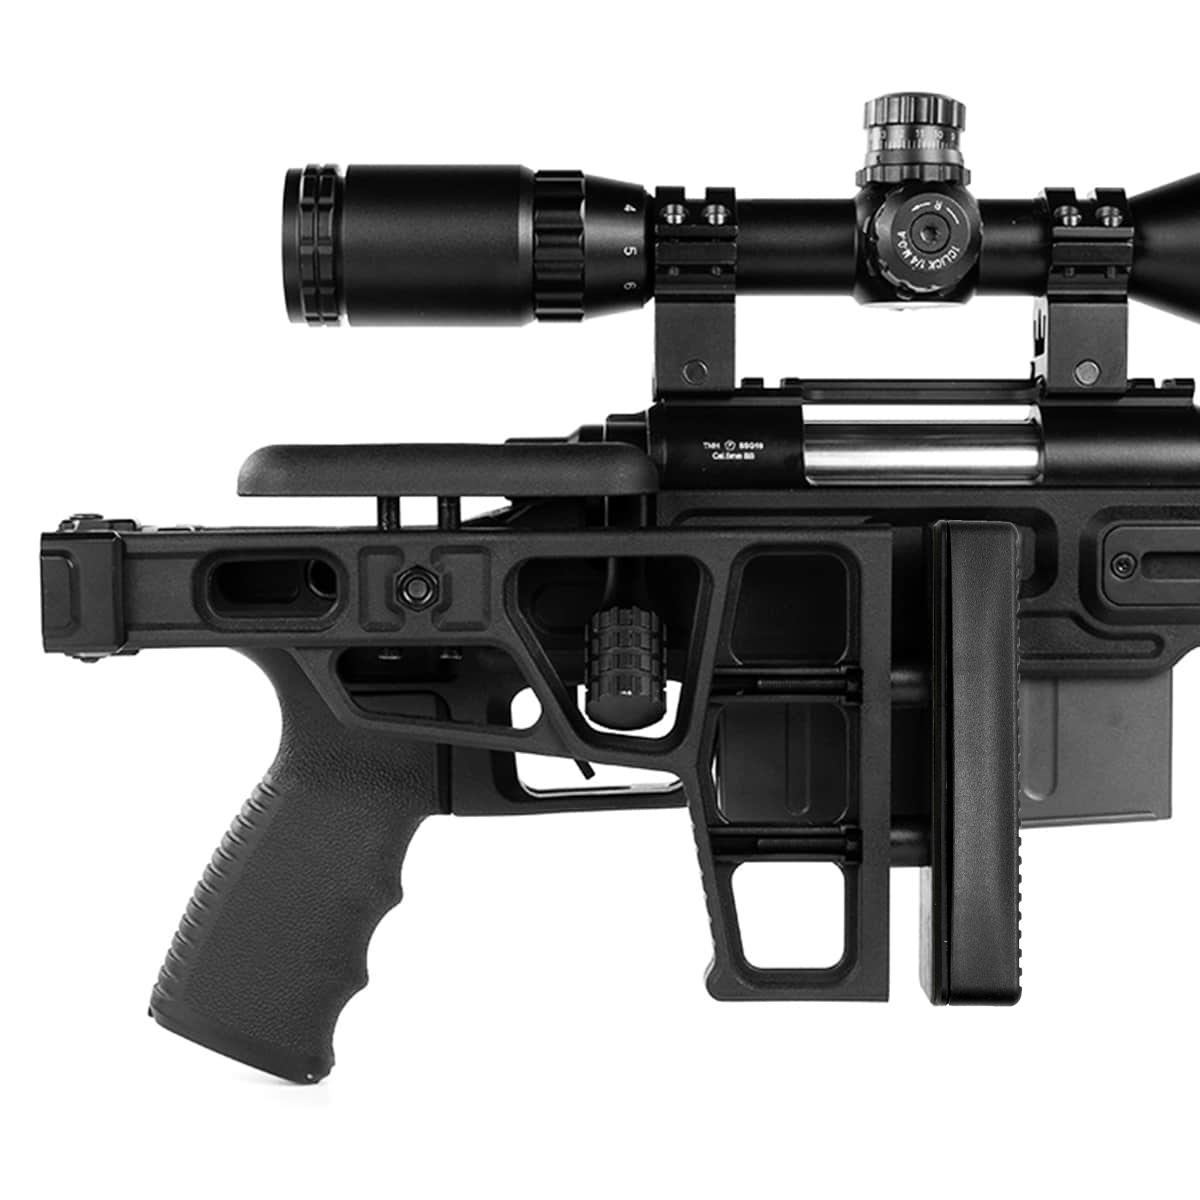 SSG10 A3 Airsoft Sniper Rifle - Novritsch